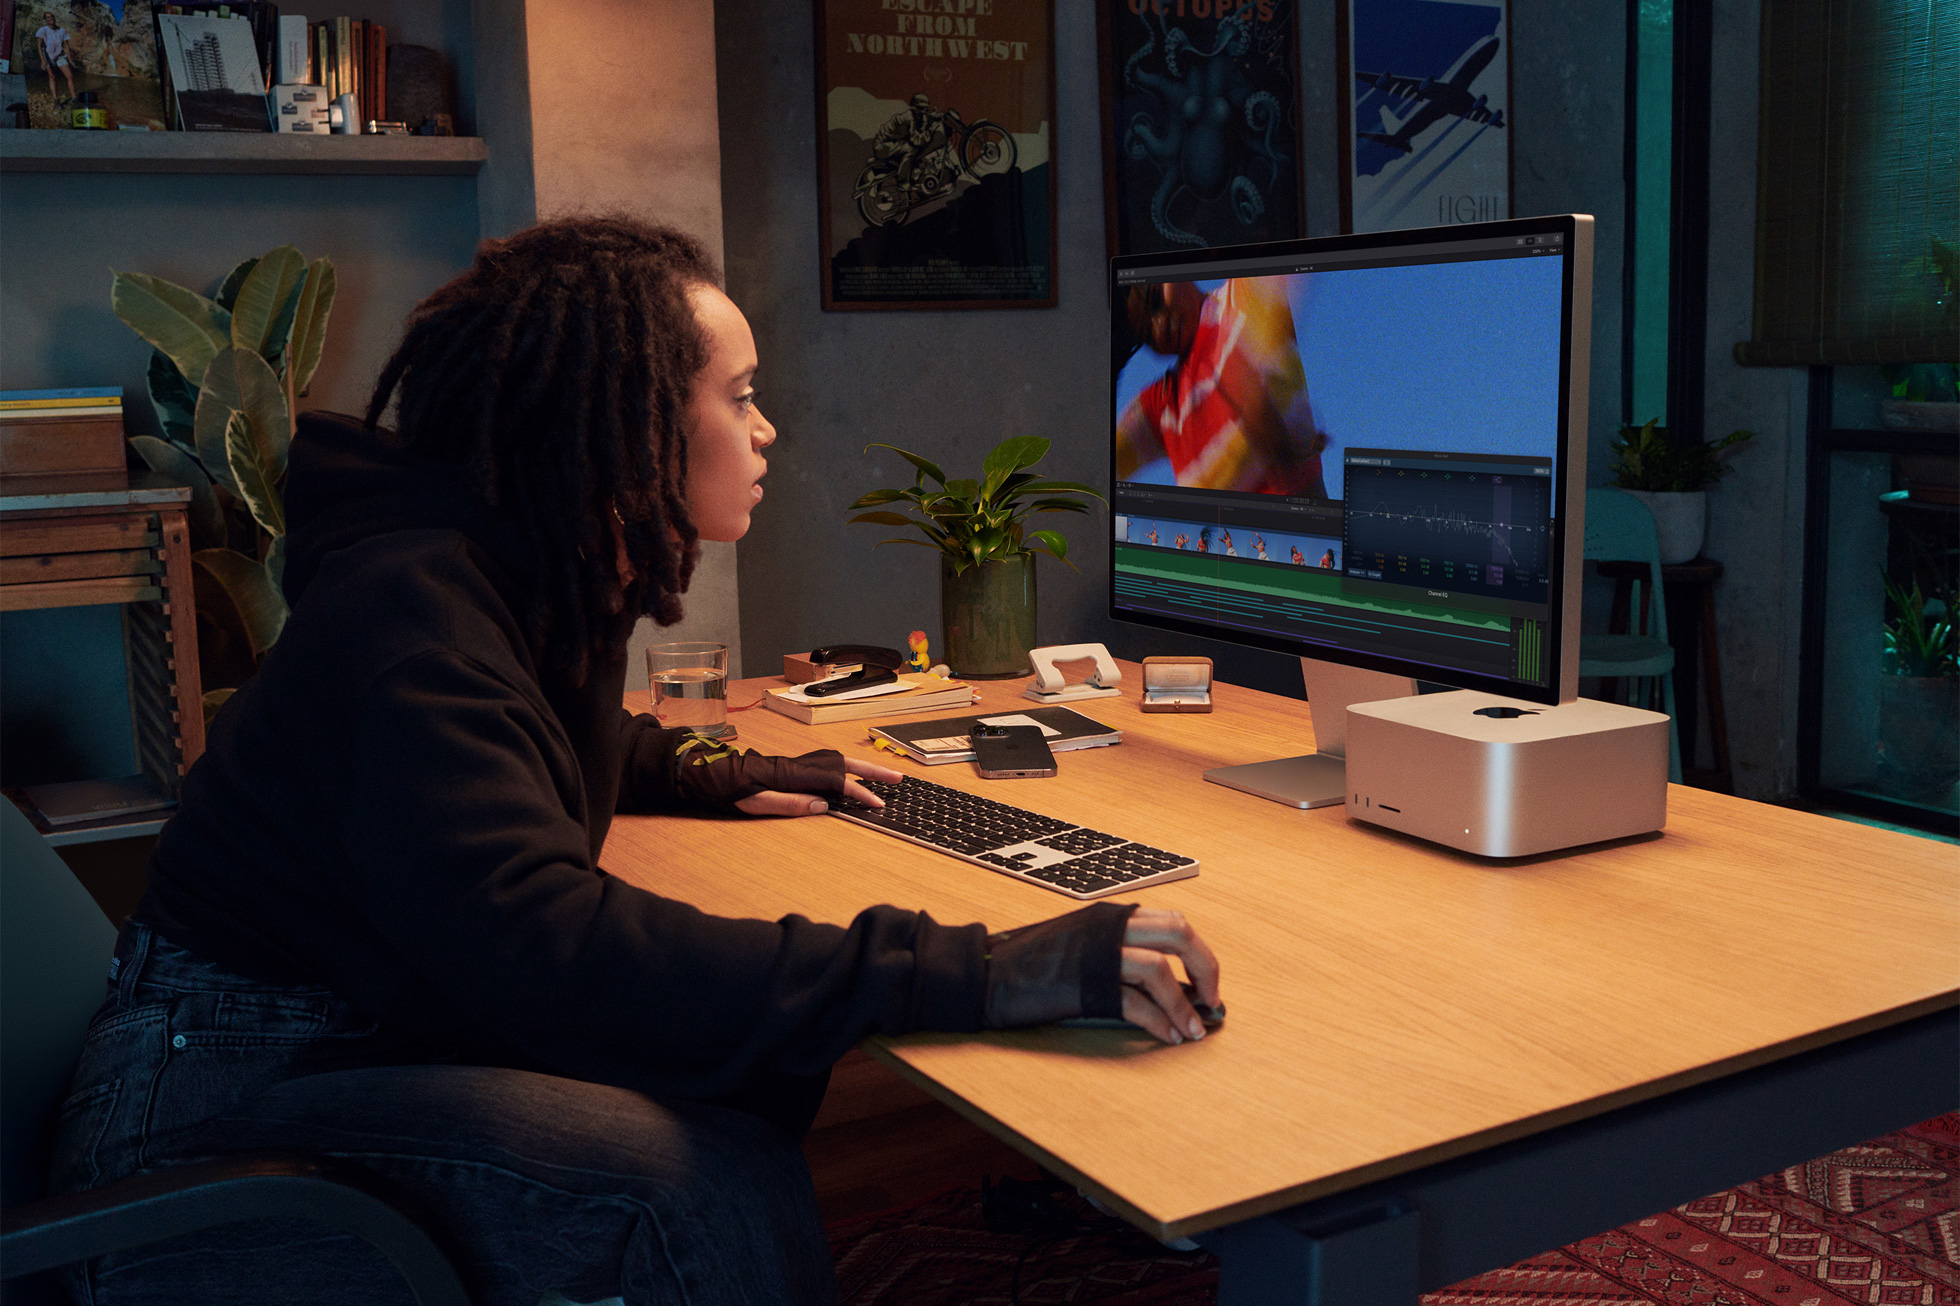 في هذه الصورة التسويقية من Apple ، تم تصوير محترف مبدع جالسًا على مكتبه ويستخدم جهاز كمبيوتر Mac Studio متصل بشاشة Studio Display